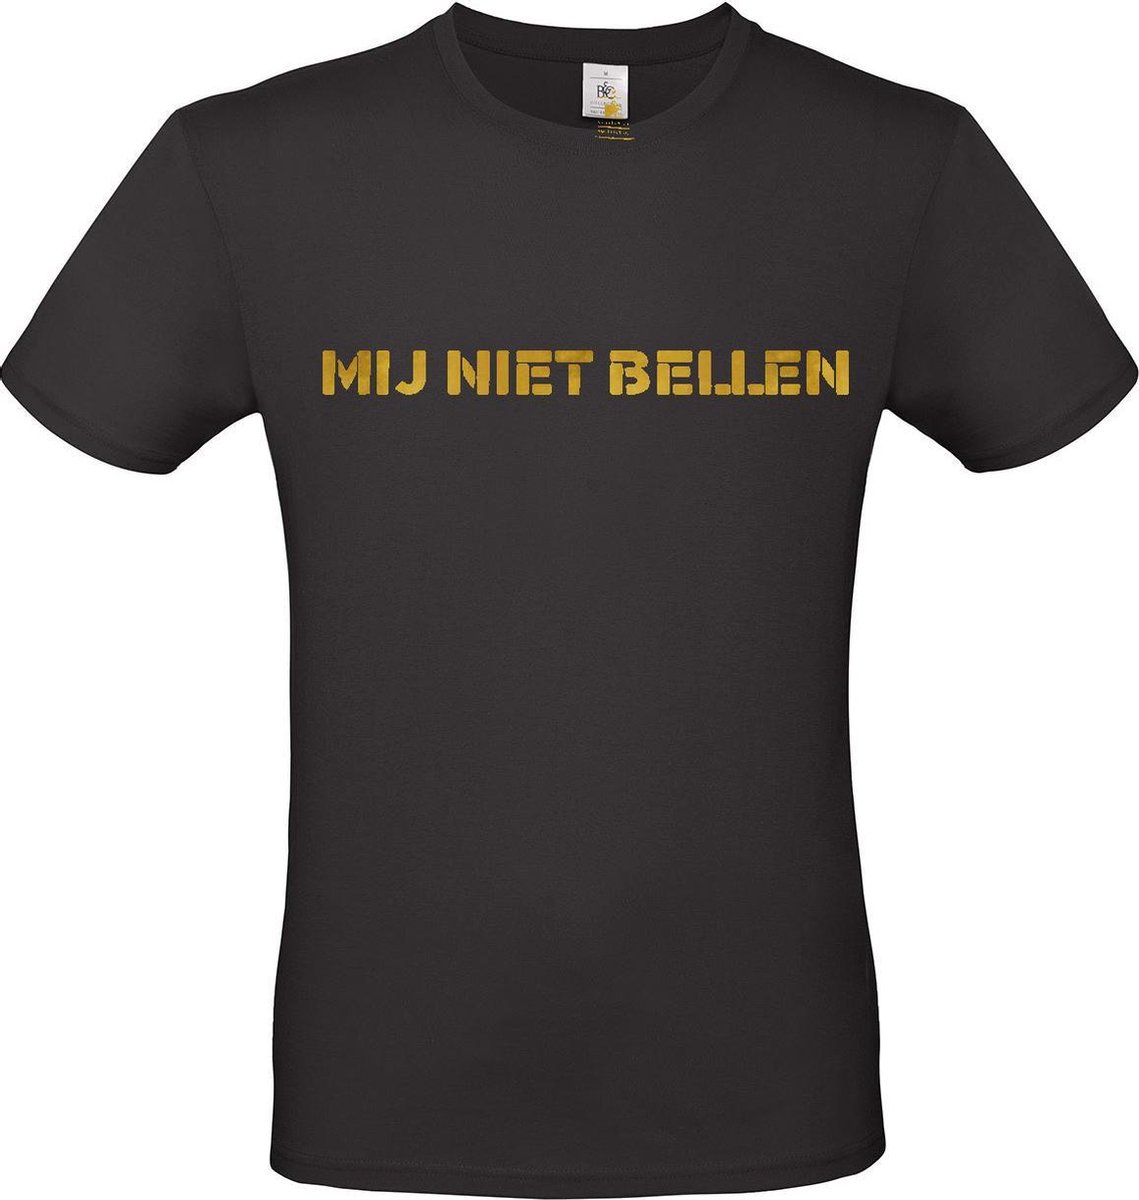 T-shirt met opdruk “Mij niet bellen”, Zwart T-shirt met goudkleurige opdruk. | Chateau Meiland | Martien Meiland | BC custom